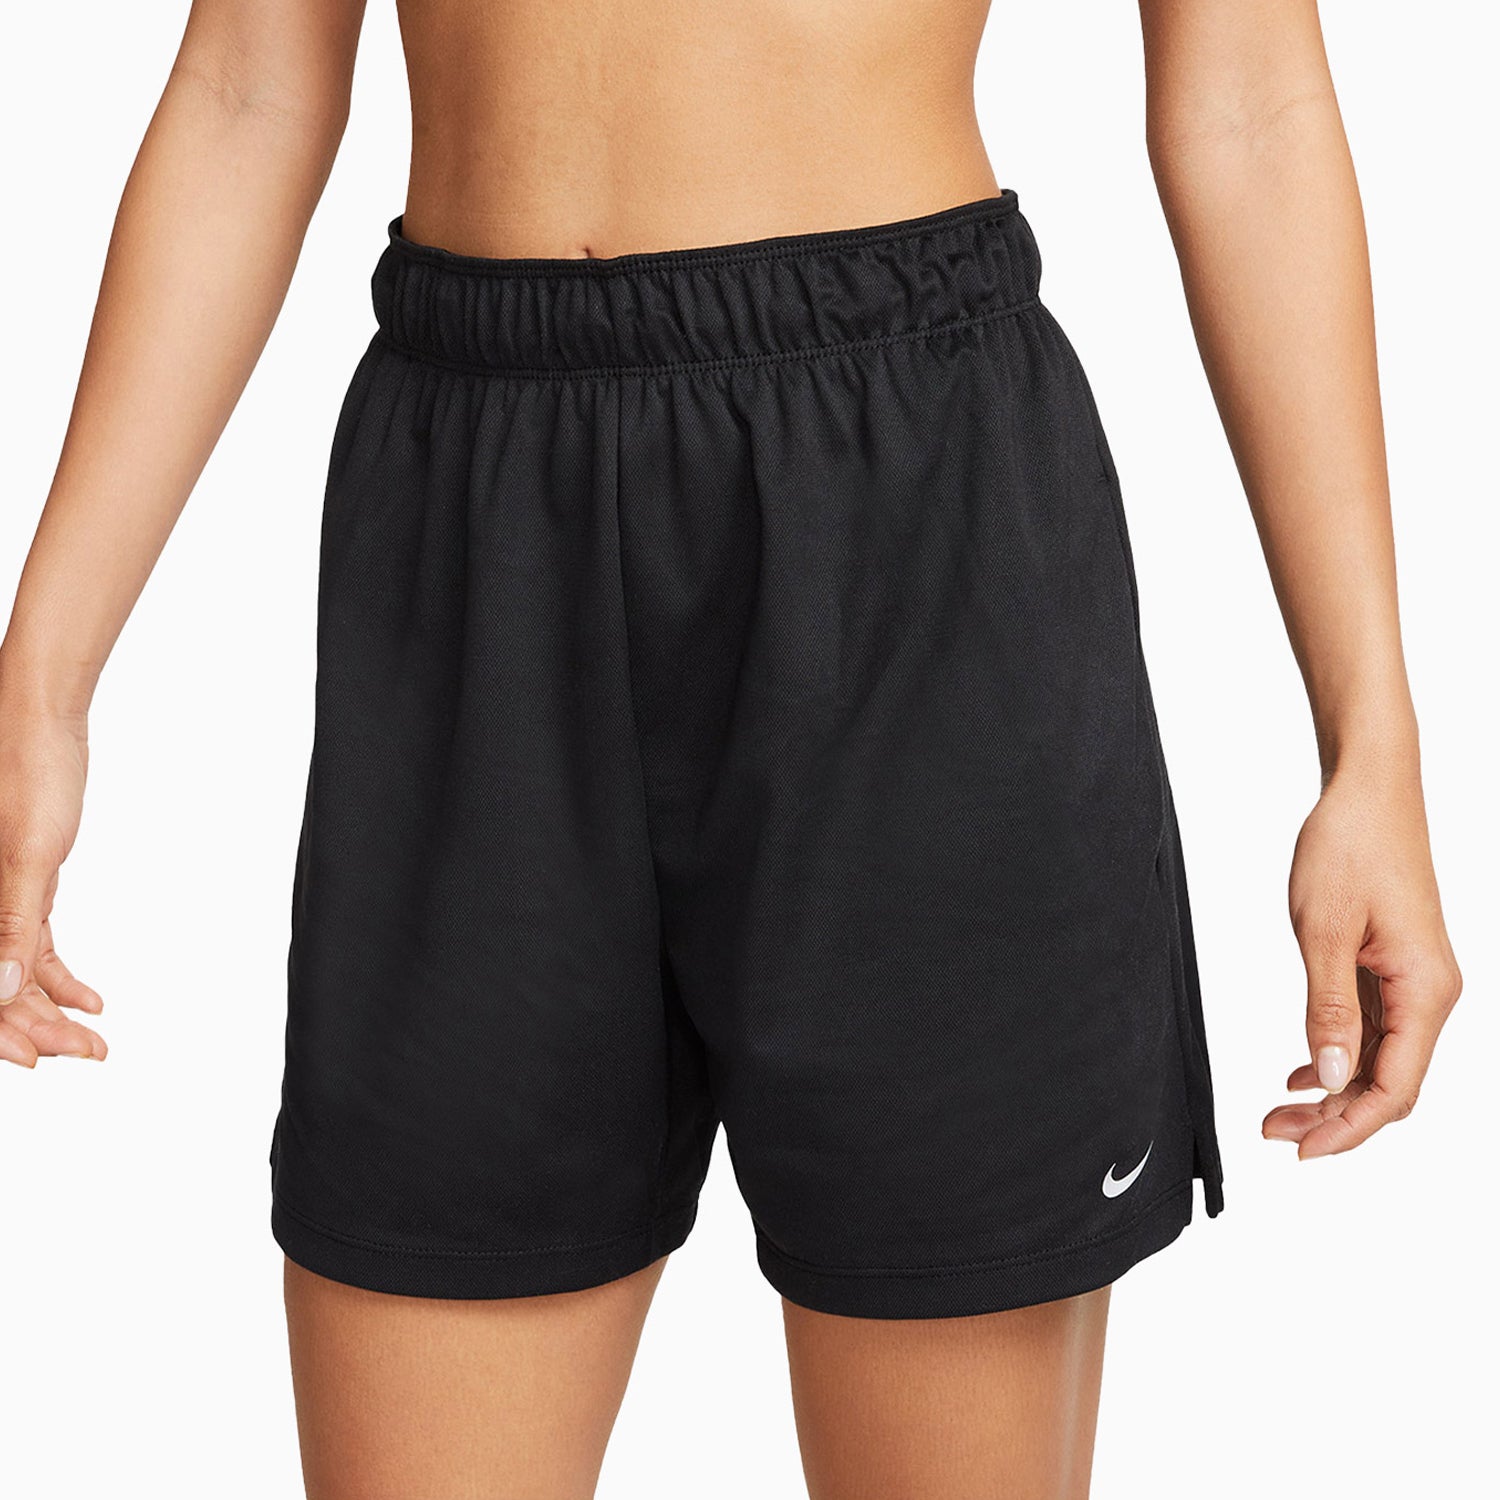 Nike Women's Evolution Forearm Sleeve - Black/Volt